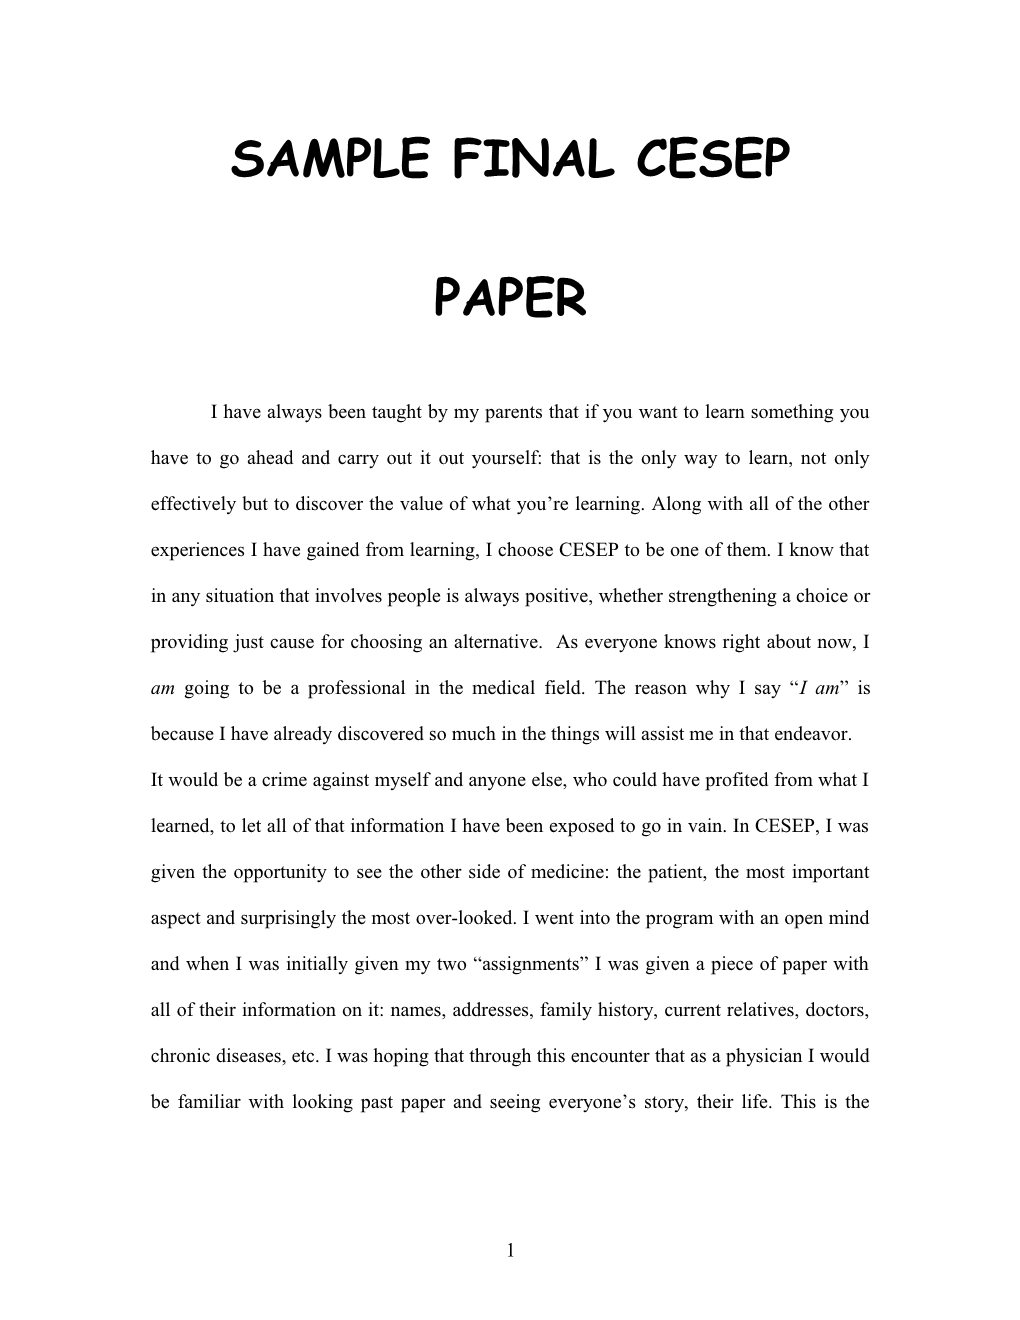 Sample Final Cesep Paper